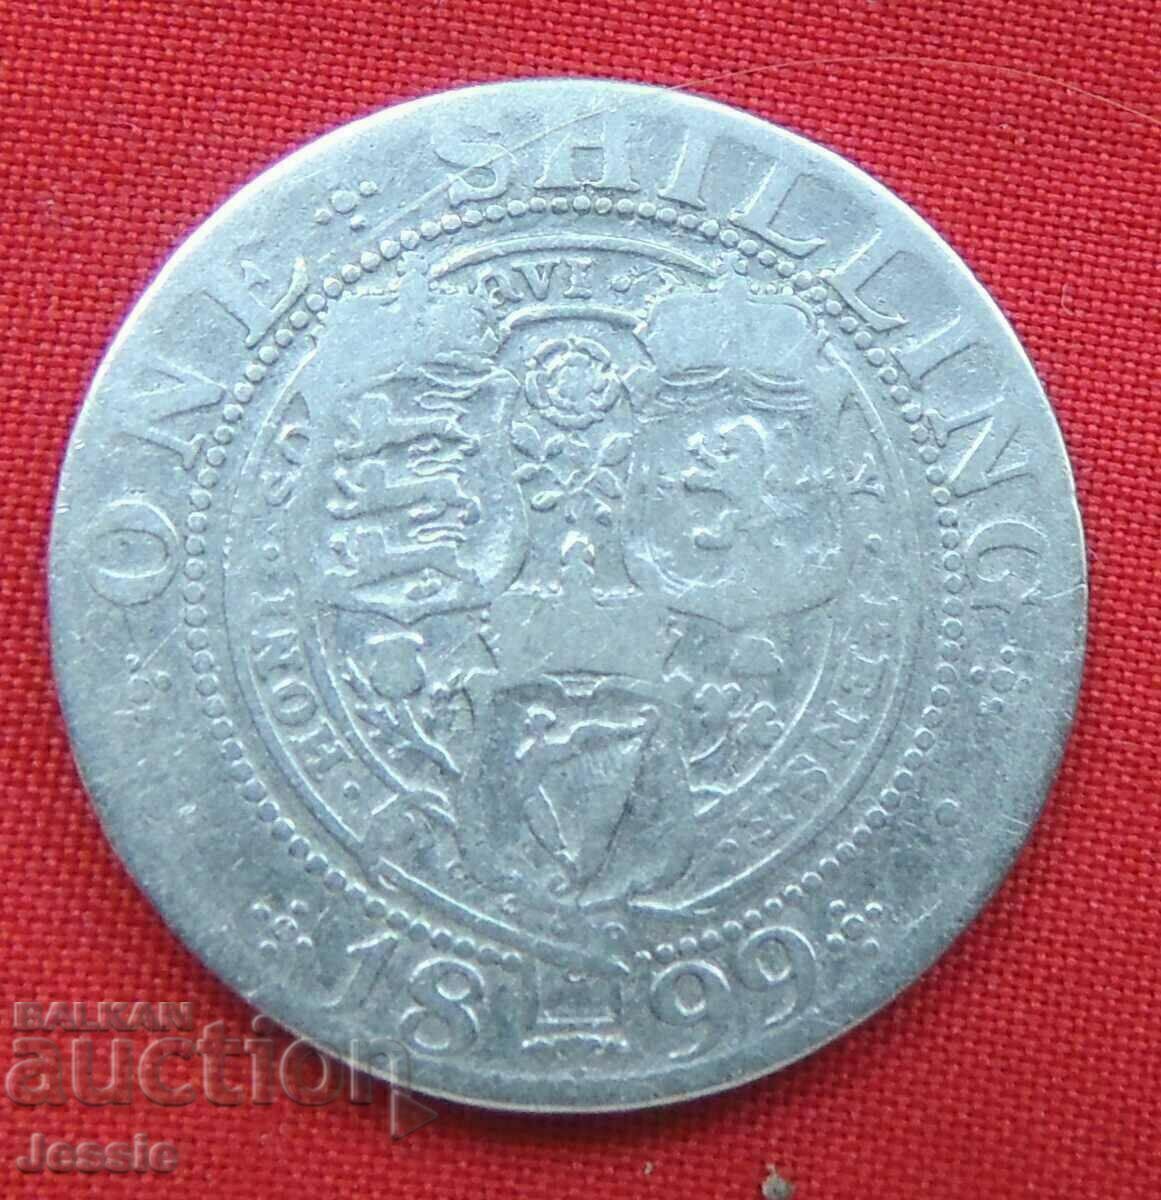 1 Shilling 1899 Great Britain Victoria